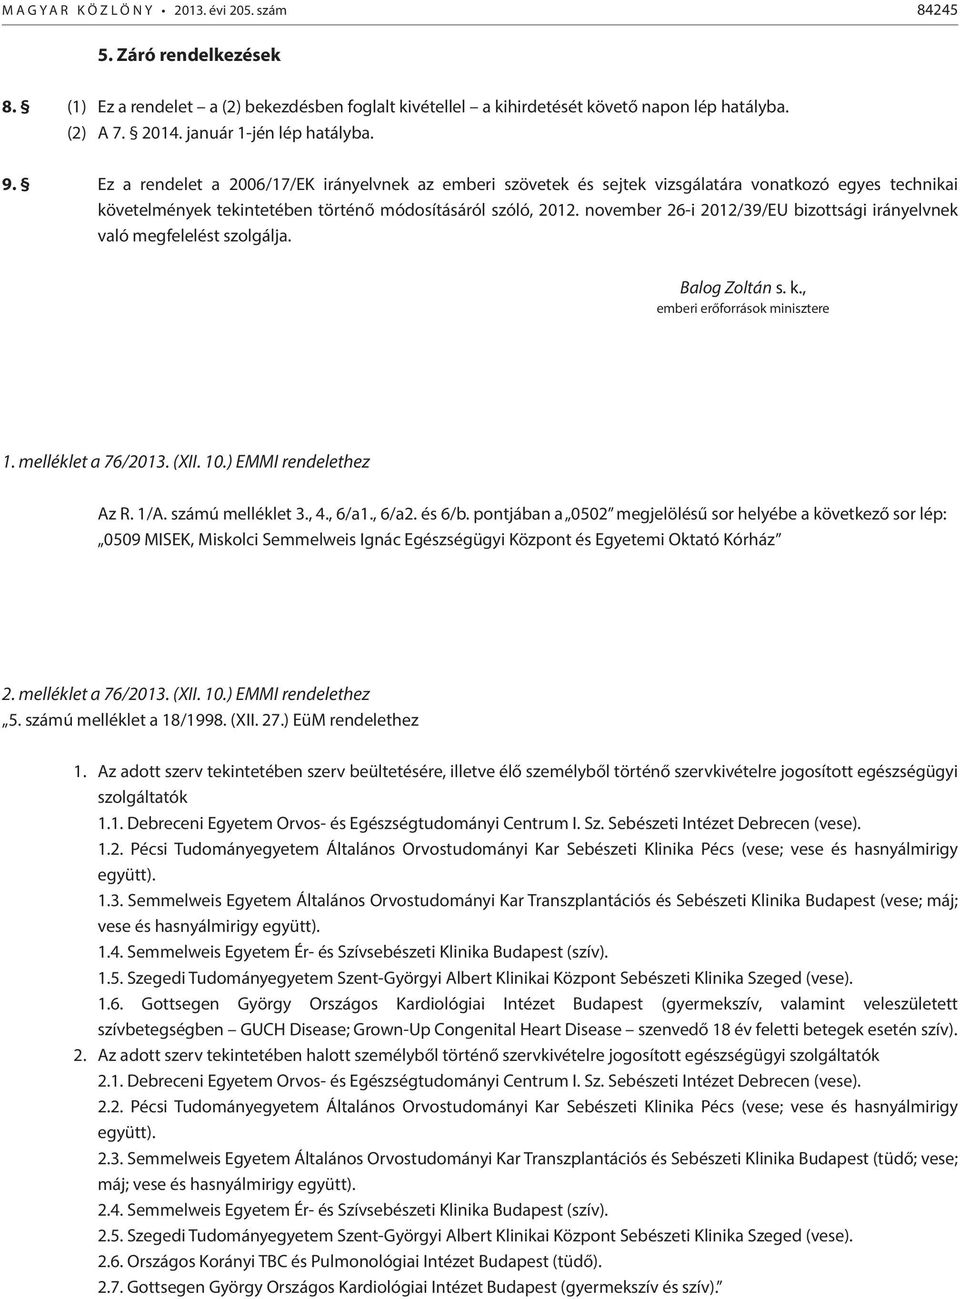 november 26-i 2012/39/EU bizottsági irányelvnek való megfelelést szolgálja. Balog Zoltán s. k., emberi erőforrások minisztere 1. melléklet a 76/2013. (XII. 10.) EMMI rendelethez Az R. 1/A.